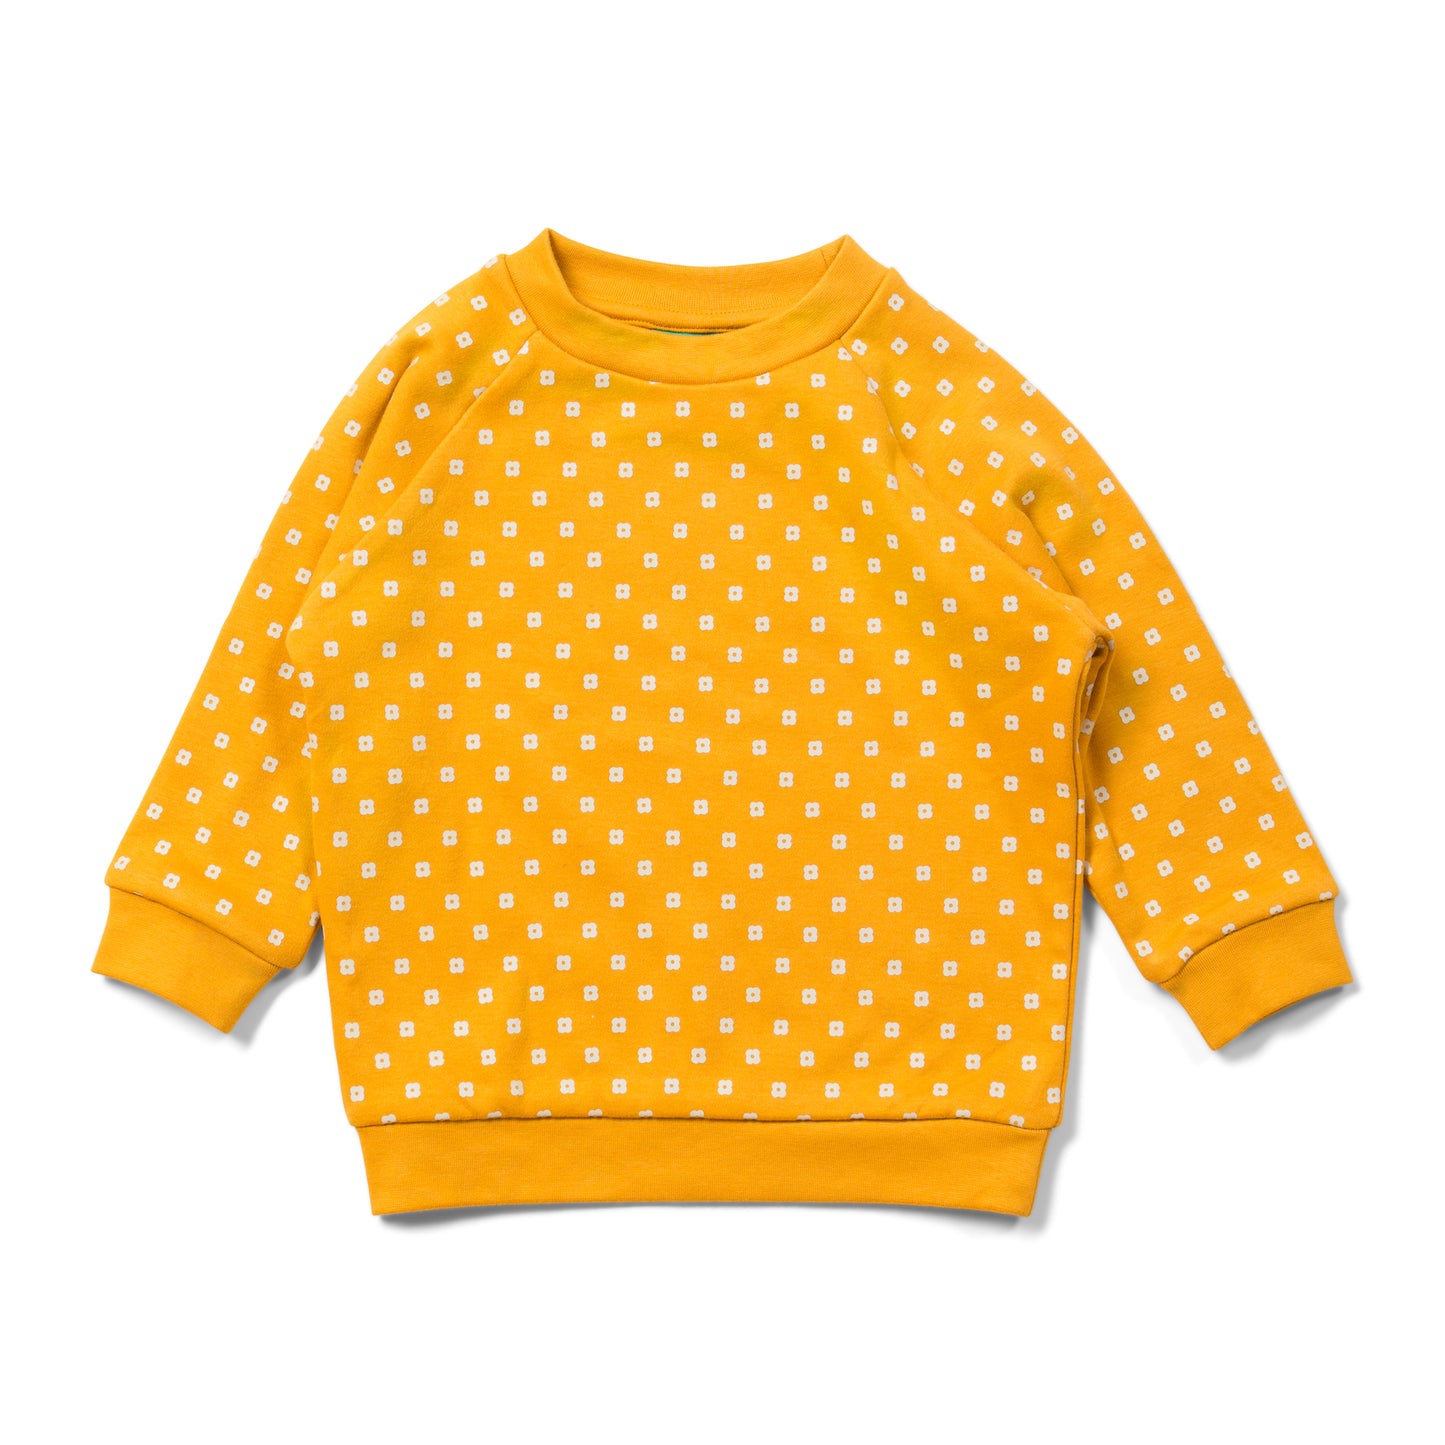 Golden flowers sweatshirt